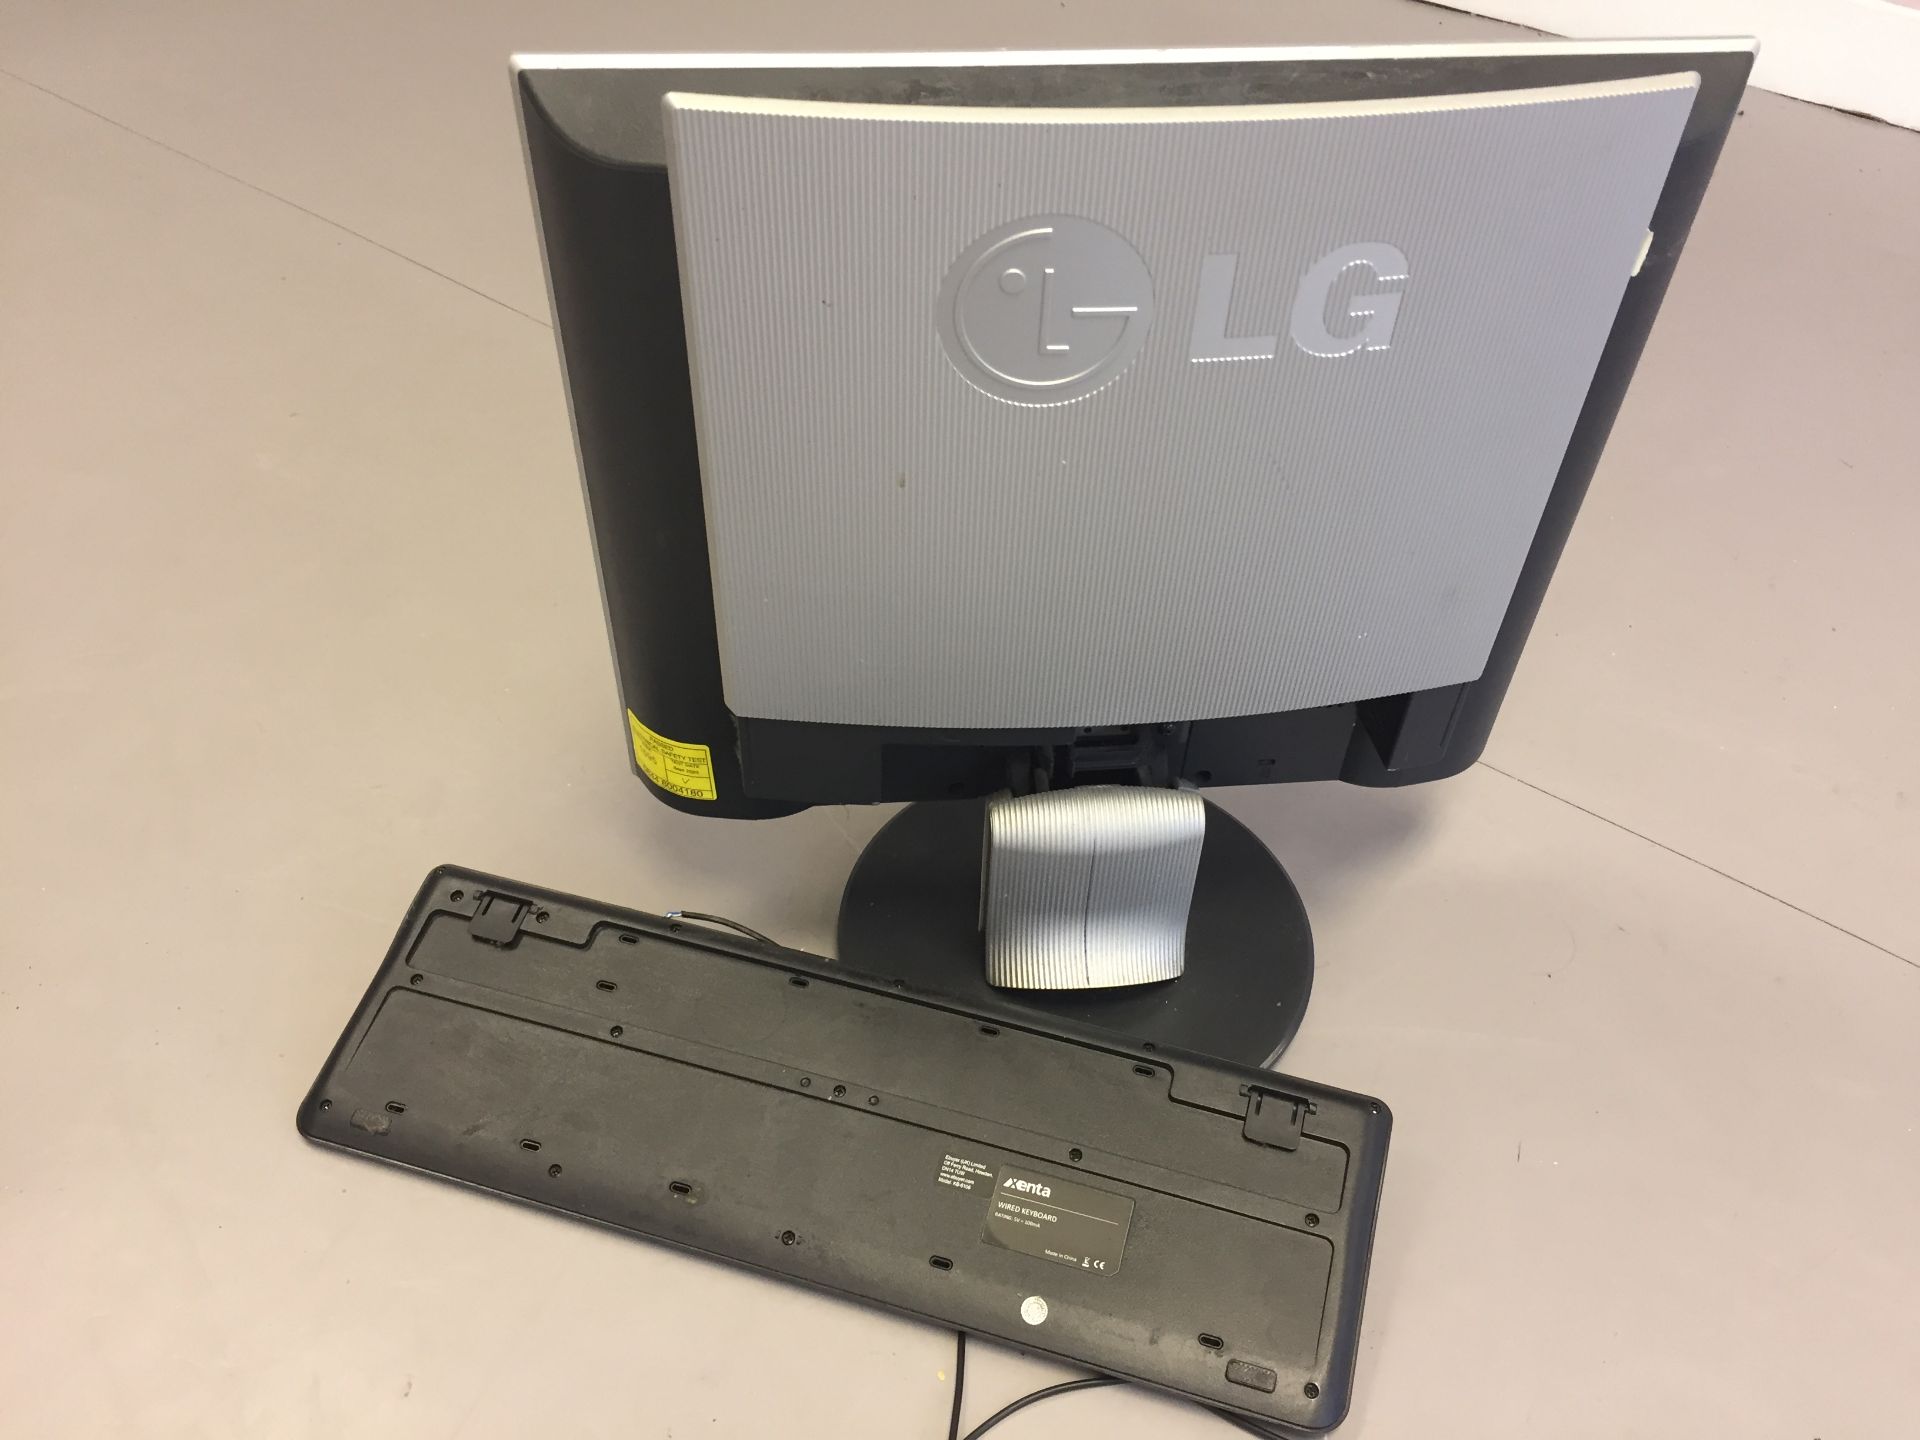 LG Monitor plus Keyboard - Bild 4 aus 4